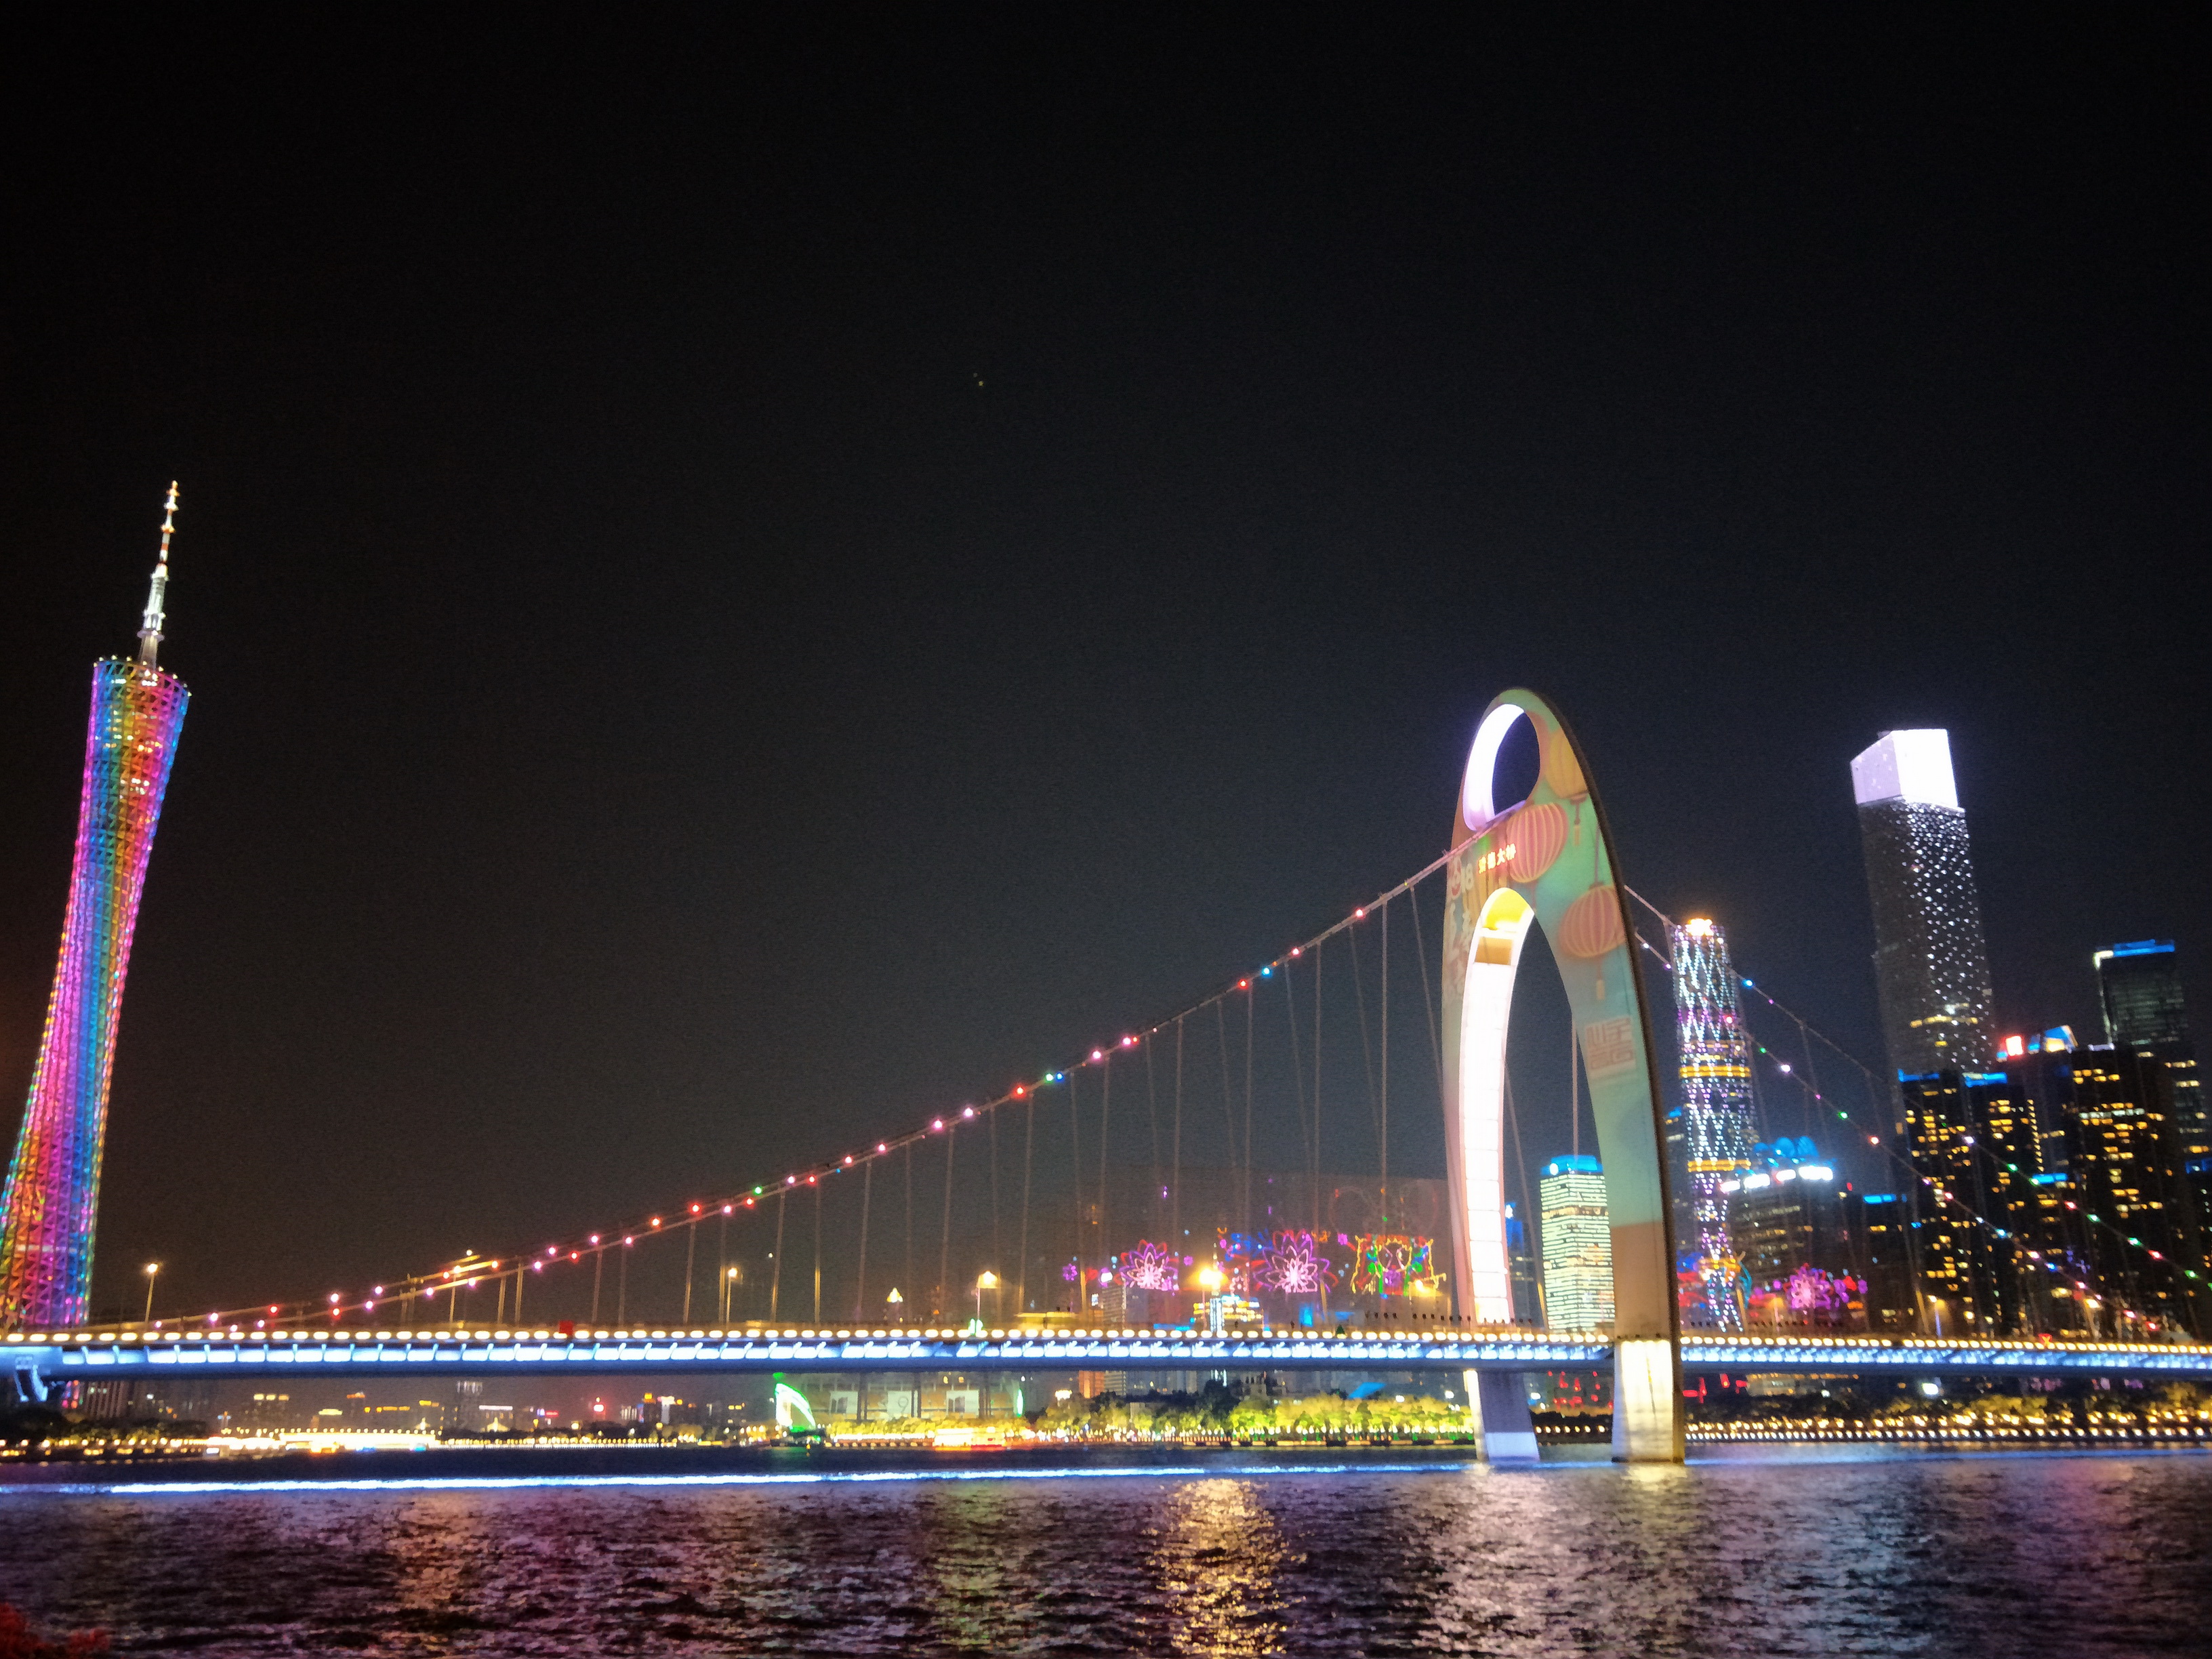 广州珠江上的悬索桥,坐拥珠江两岸魅力夜景